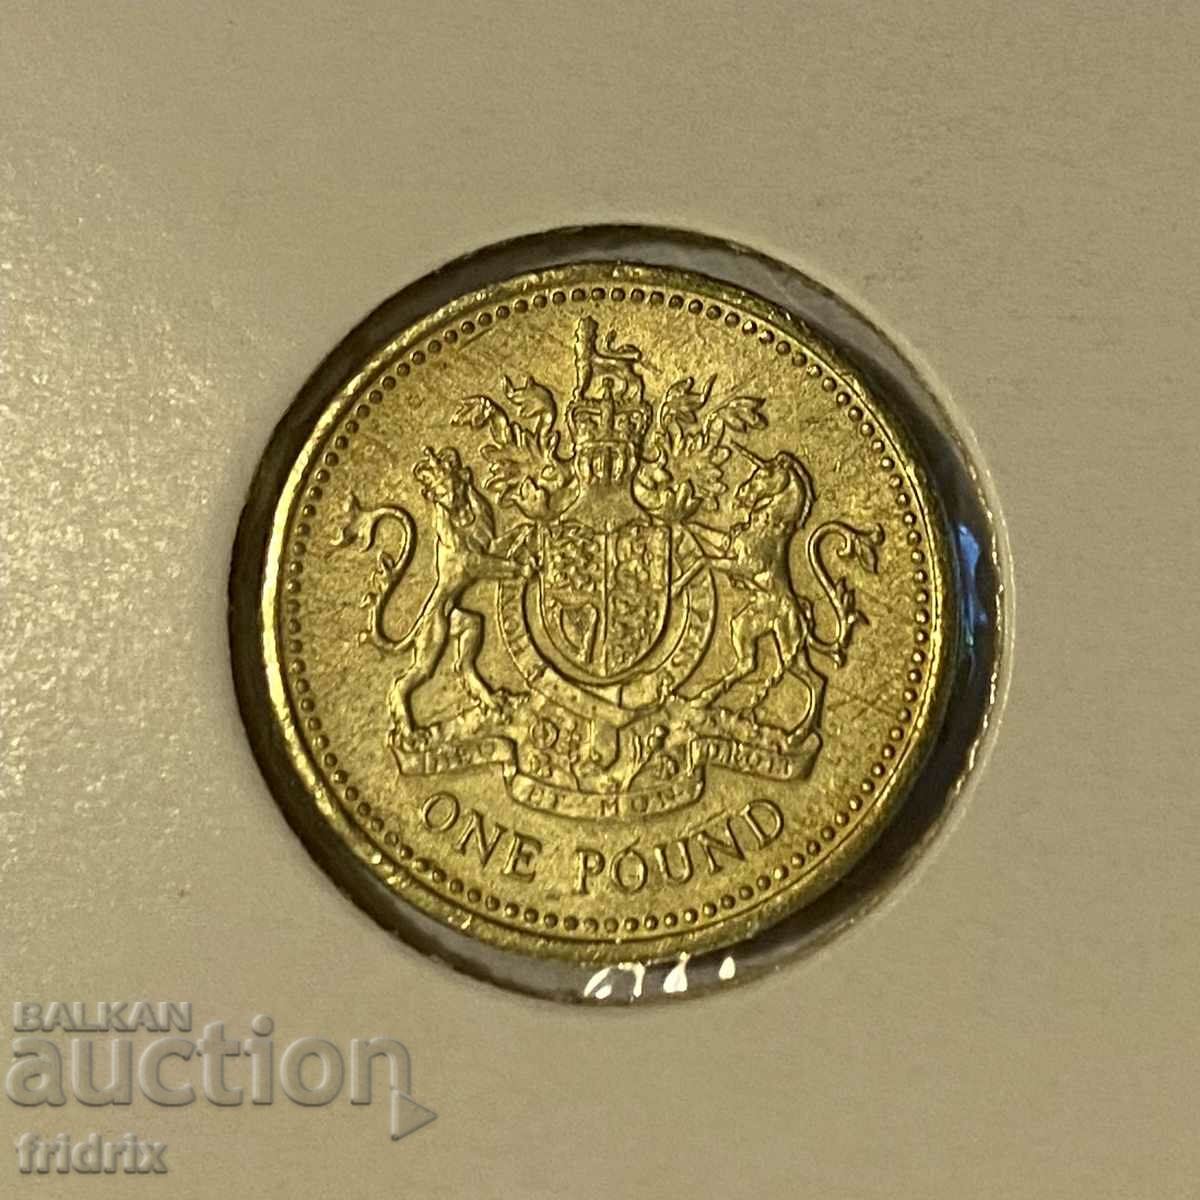 Великобритания 1 паунд / Great Britain 1 pound 2003